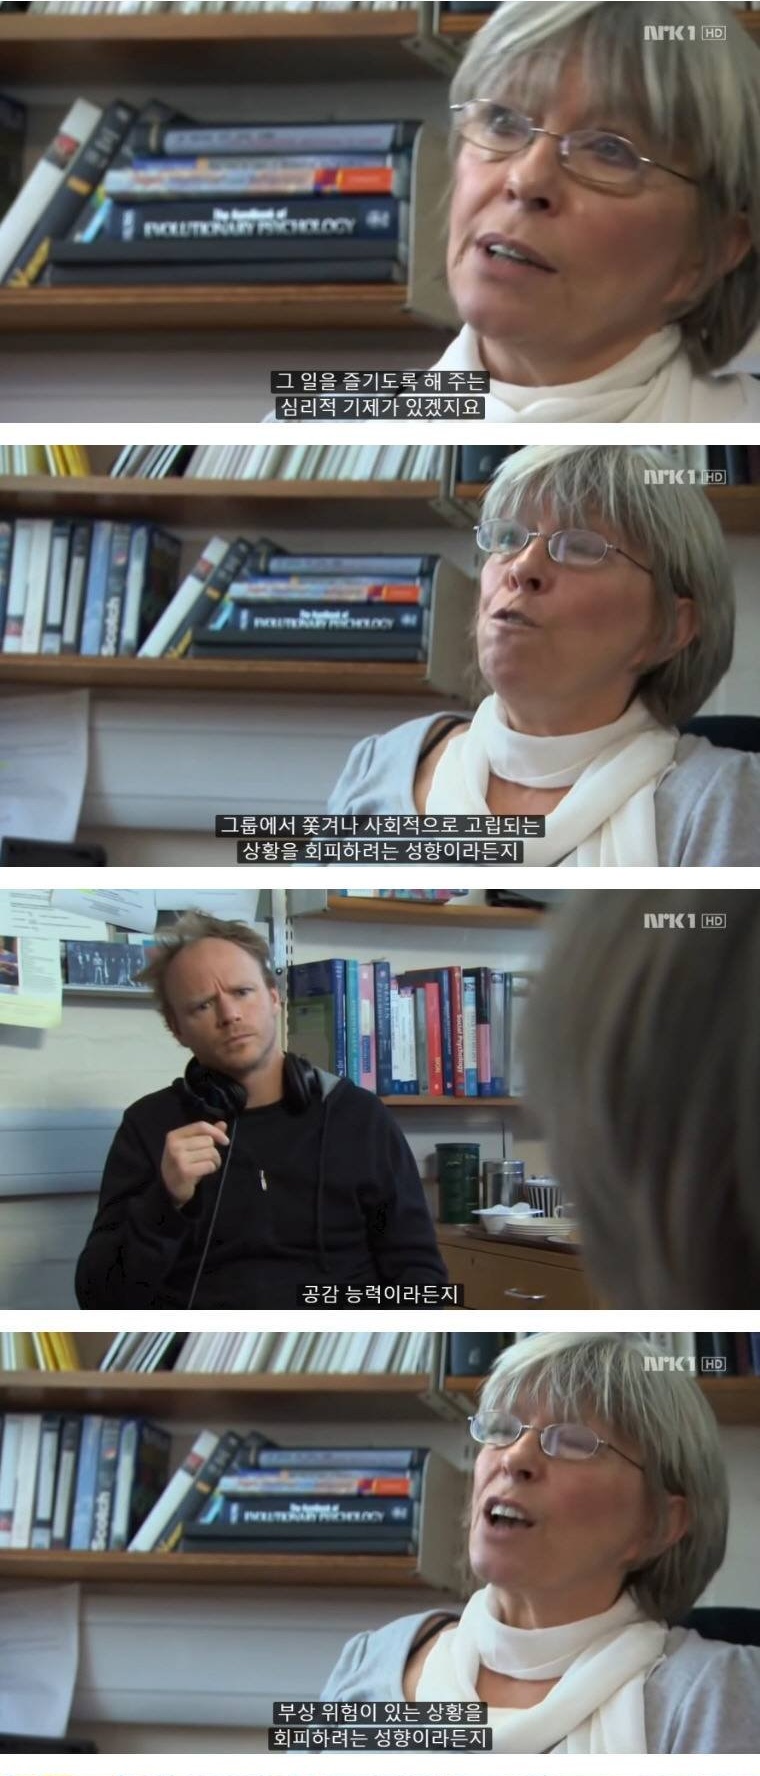 성평등 지수 1위 노르웨이의 남녀 차이 - 꾸르